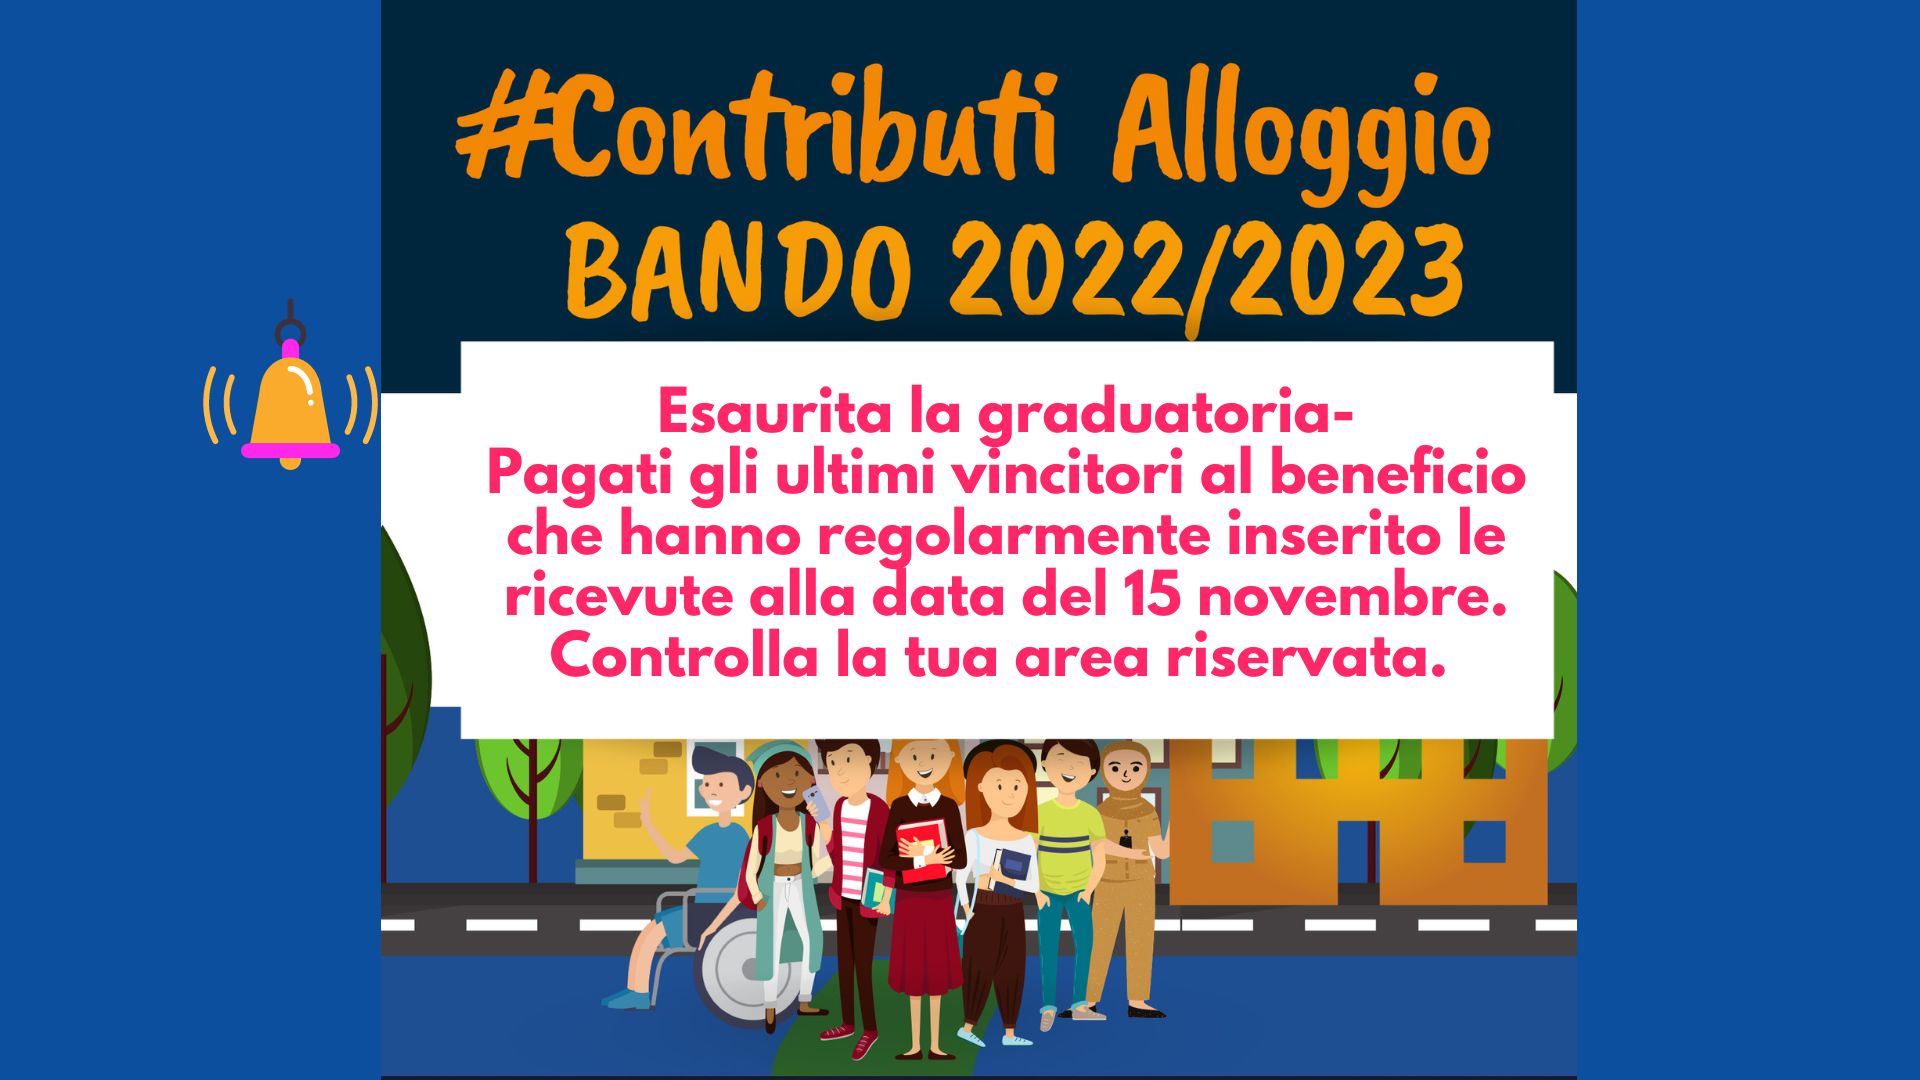 Contributi Alloggio-Bando 2022/2023- Esaurita la graduatoria- Pagati gli ultimi vincitori al beneficio che hanno regolarmente inserito le ricevute alla data del 15 novembre- Controlla la tua area riservata.